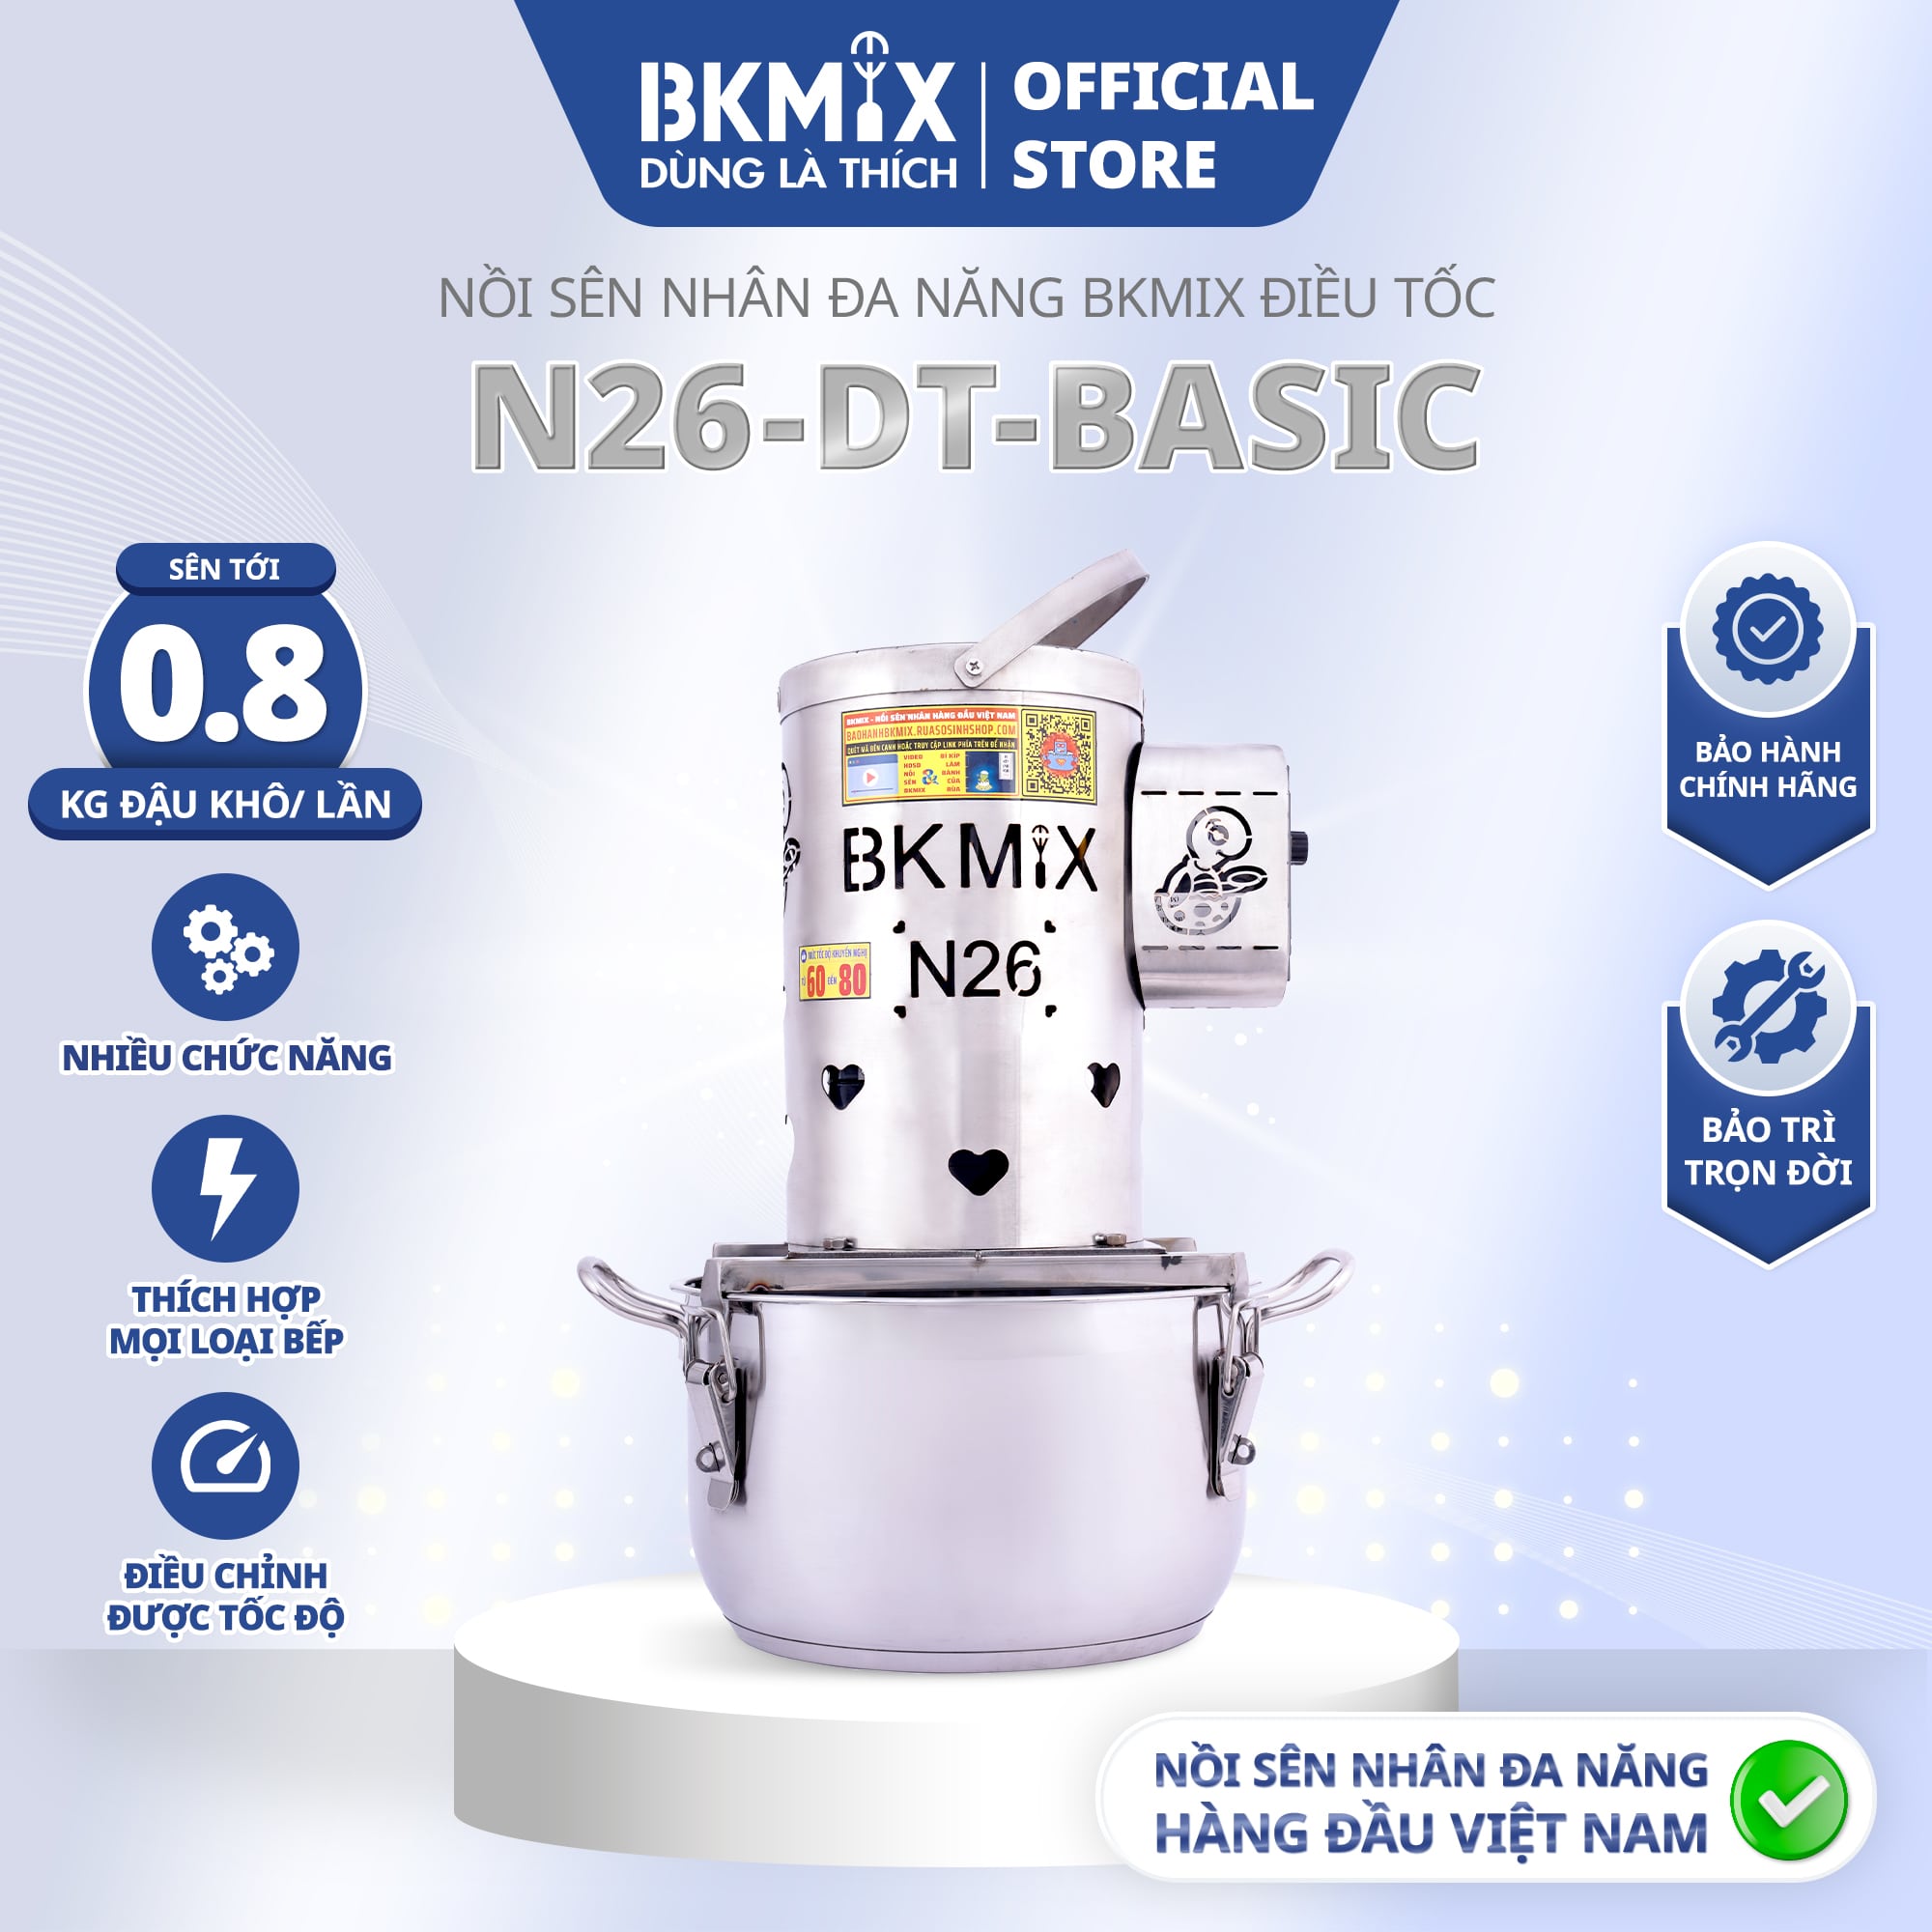 Nồi Sên Nhân Đa Năng BKMIX 08KG N26-DT-BASIC Điều Tốc Cao Cấp Full phụ kiện